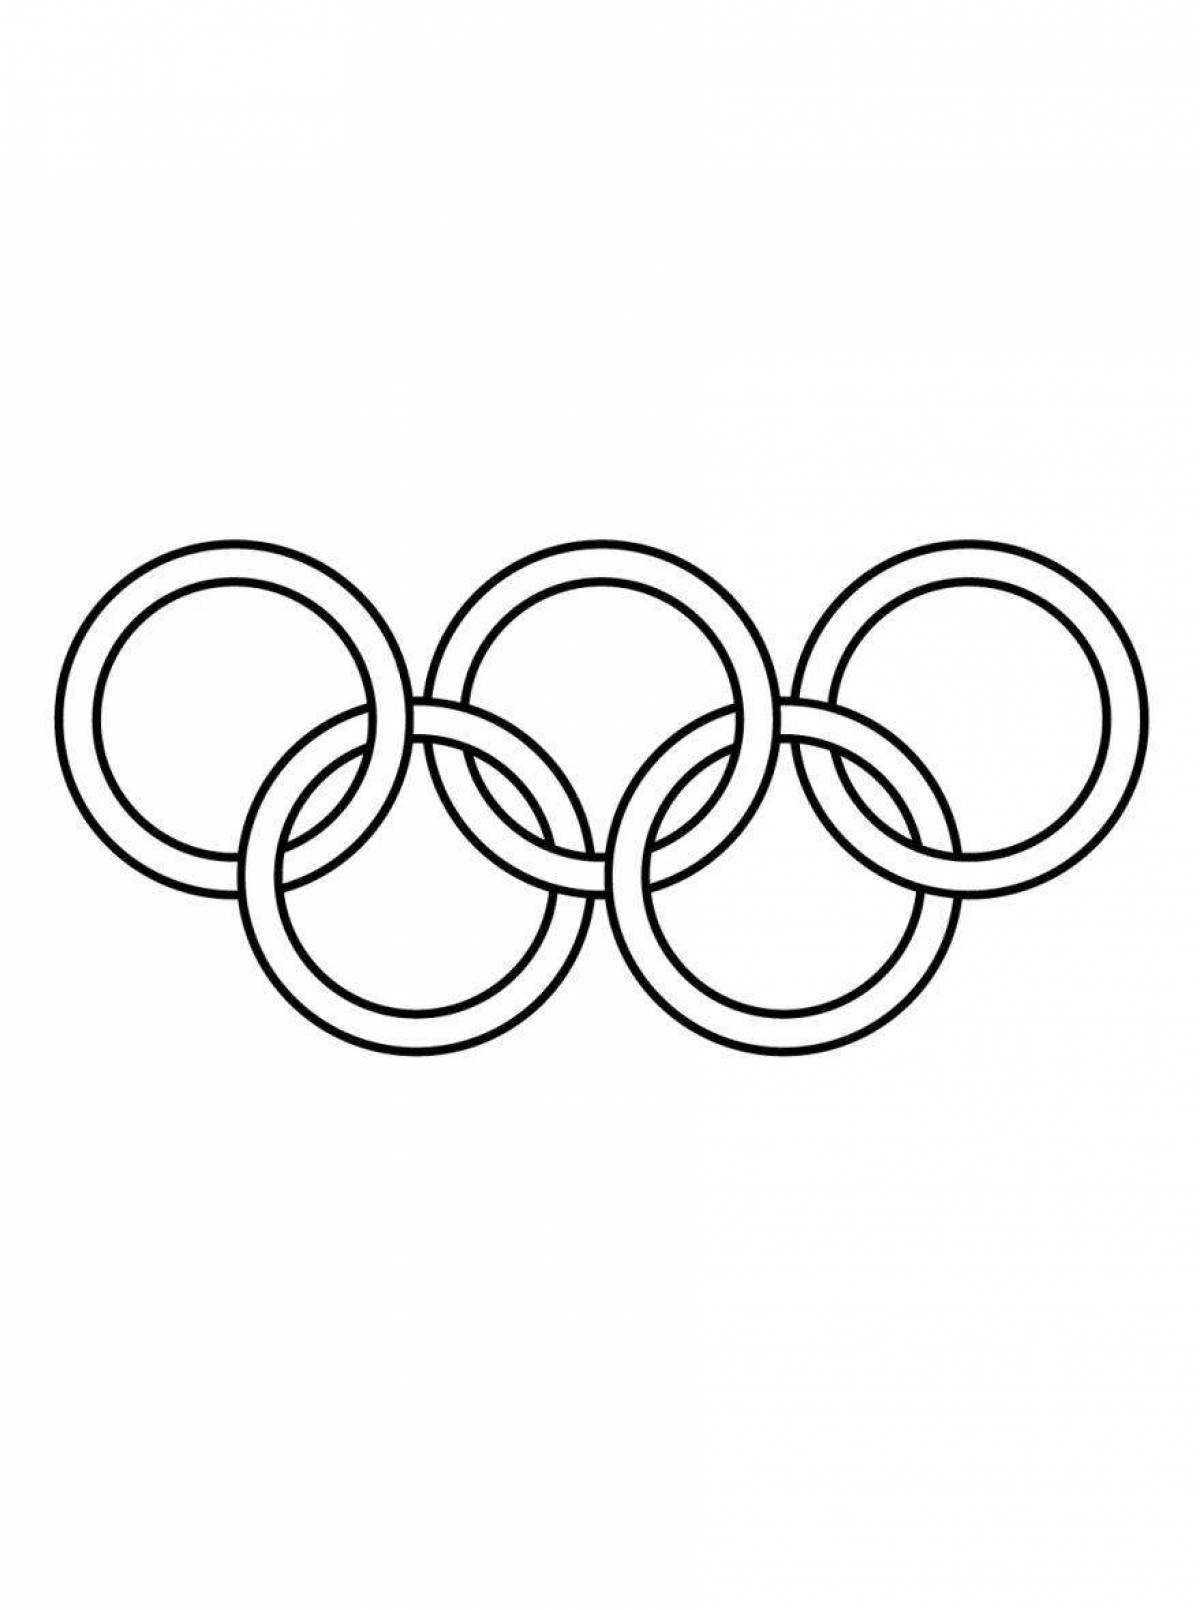 Раскраска замысловатые олимпийские кольца для печати